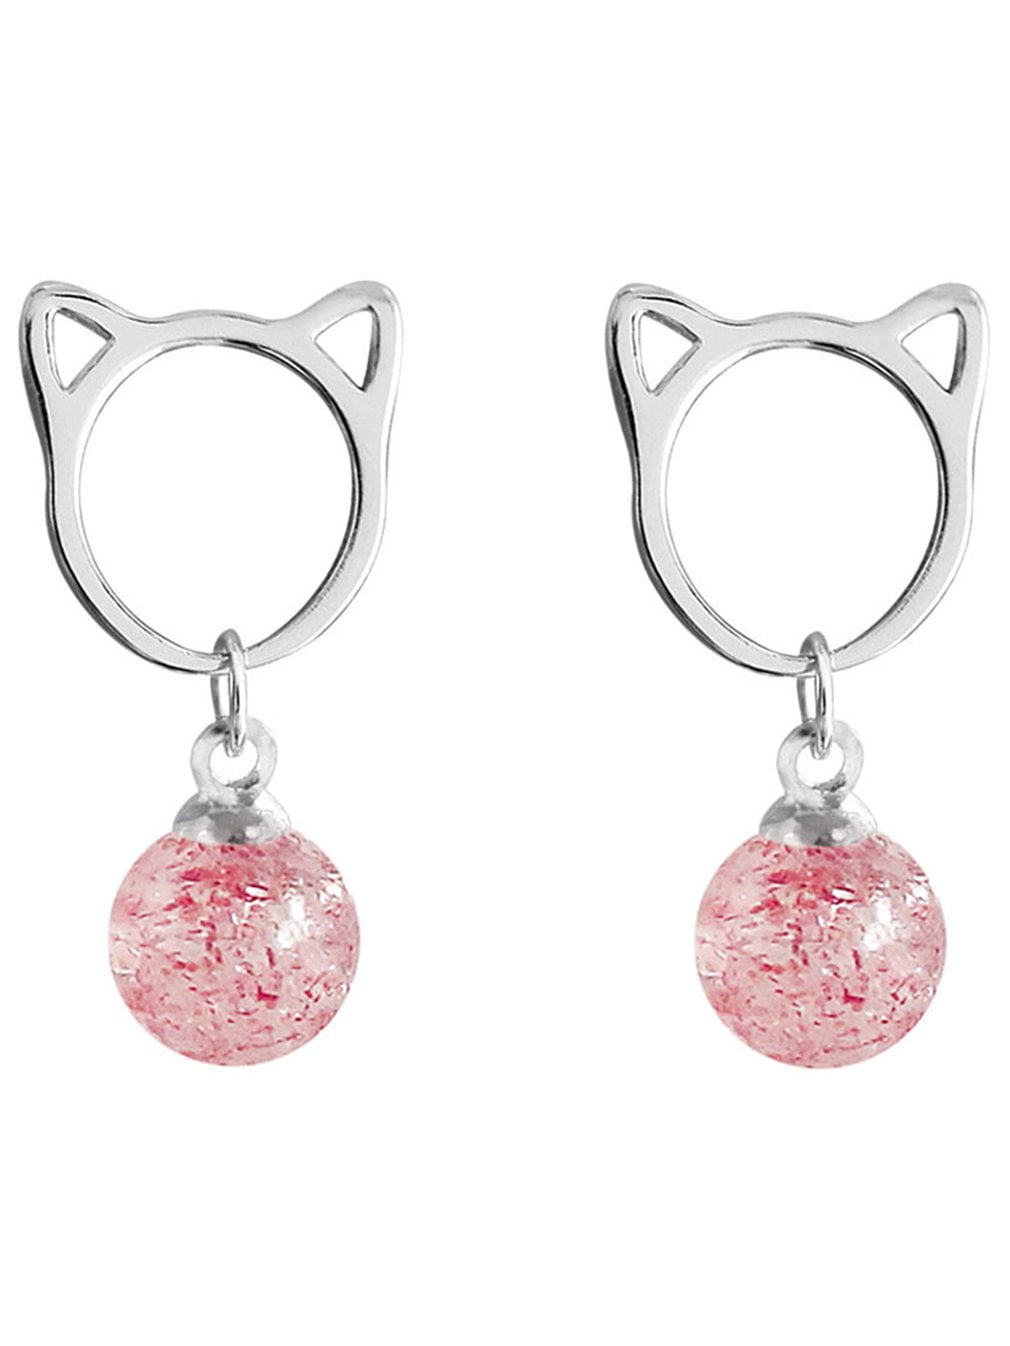 Genuine Silver Animal Earrings Cartoon Cat Moon Lovely Ear Stud Earrings Jewelry